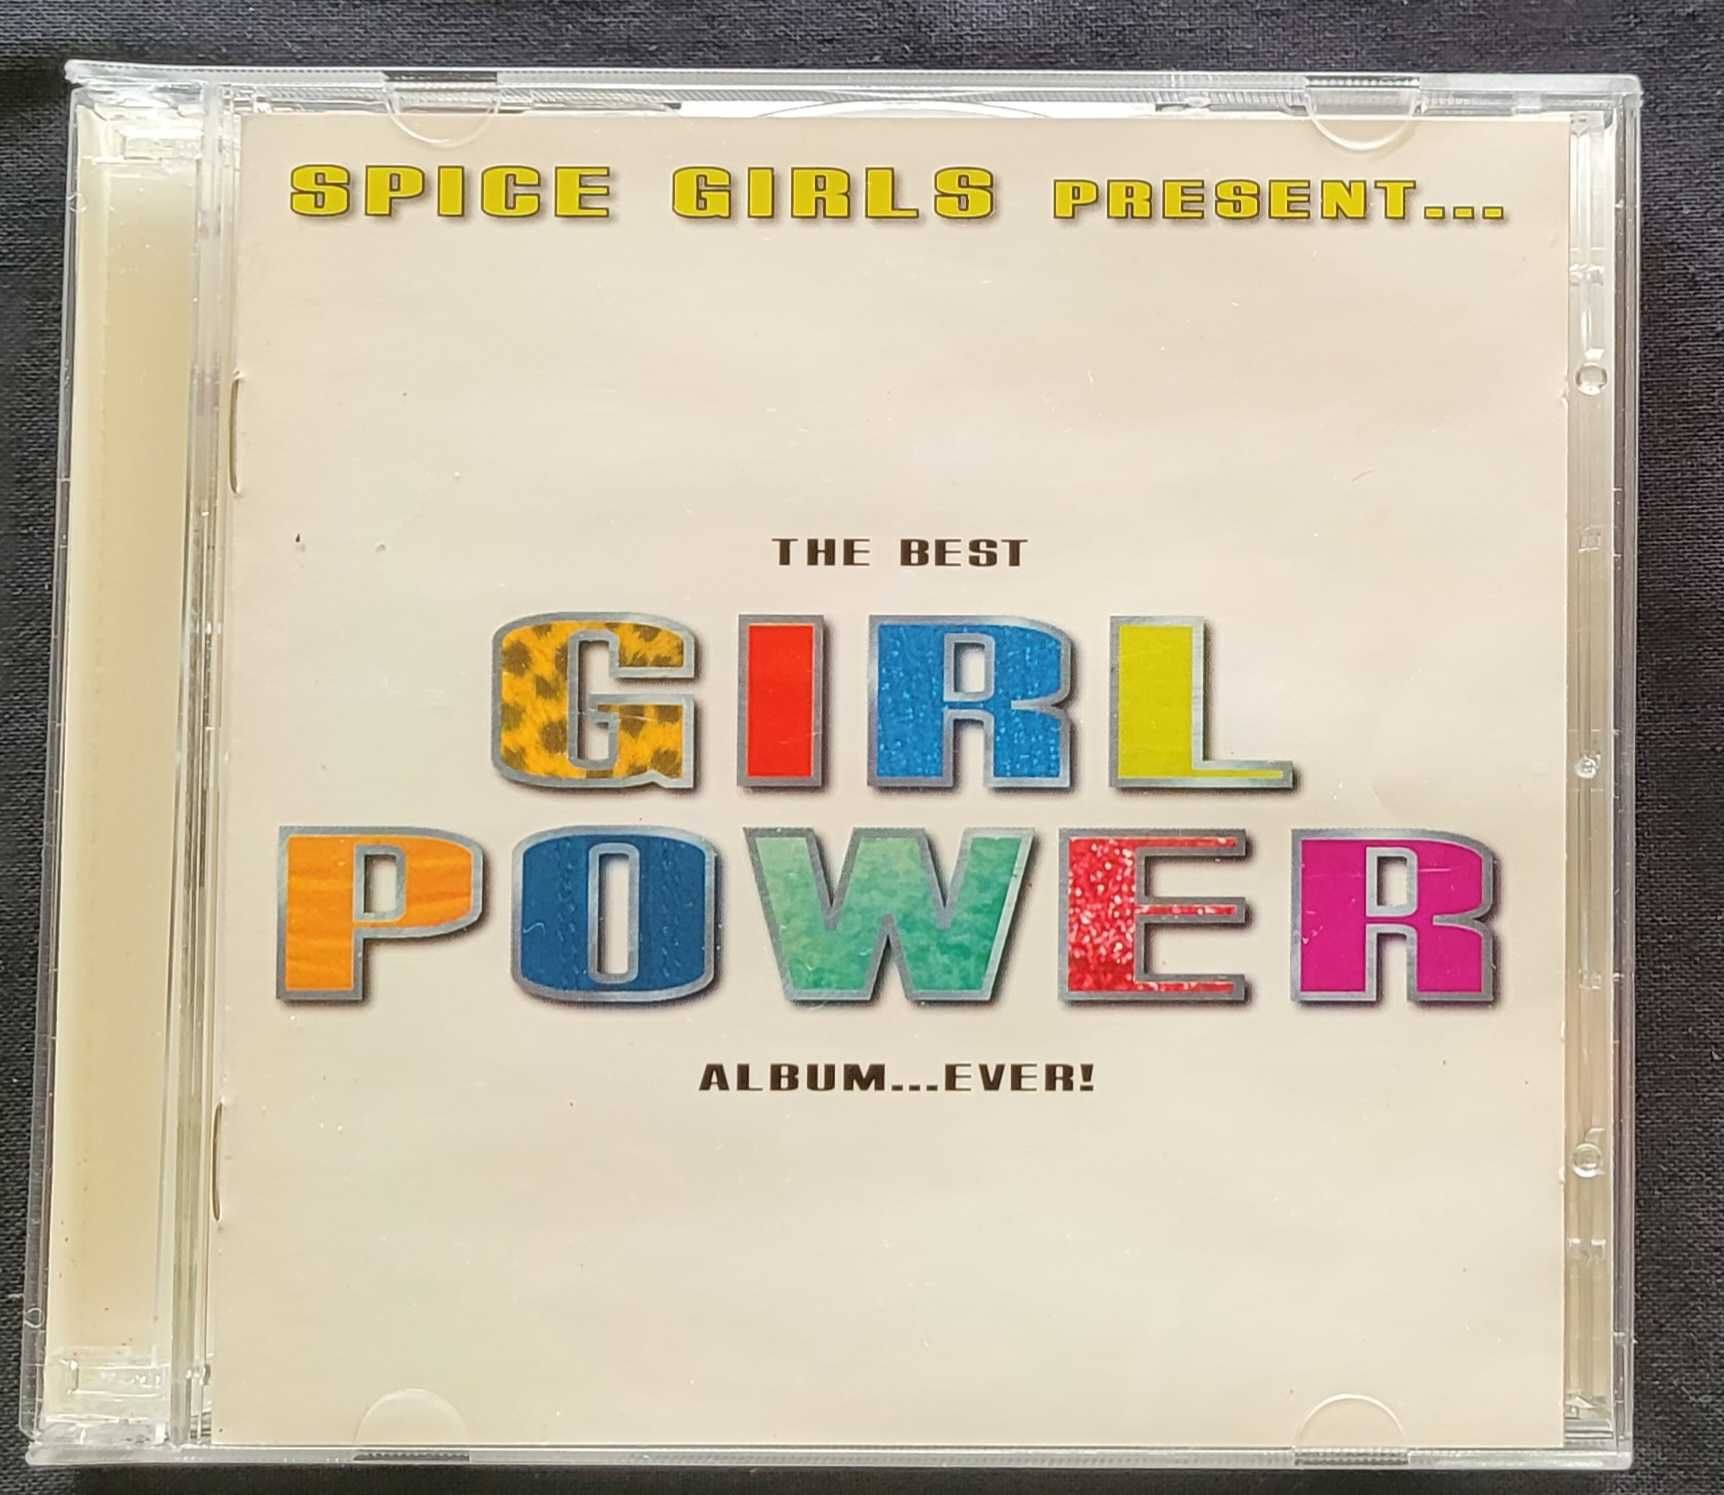 2 CD  Spice Girls/ The Best Girl Power album...Ever